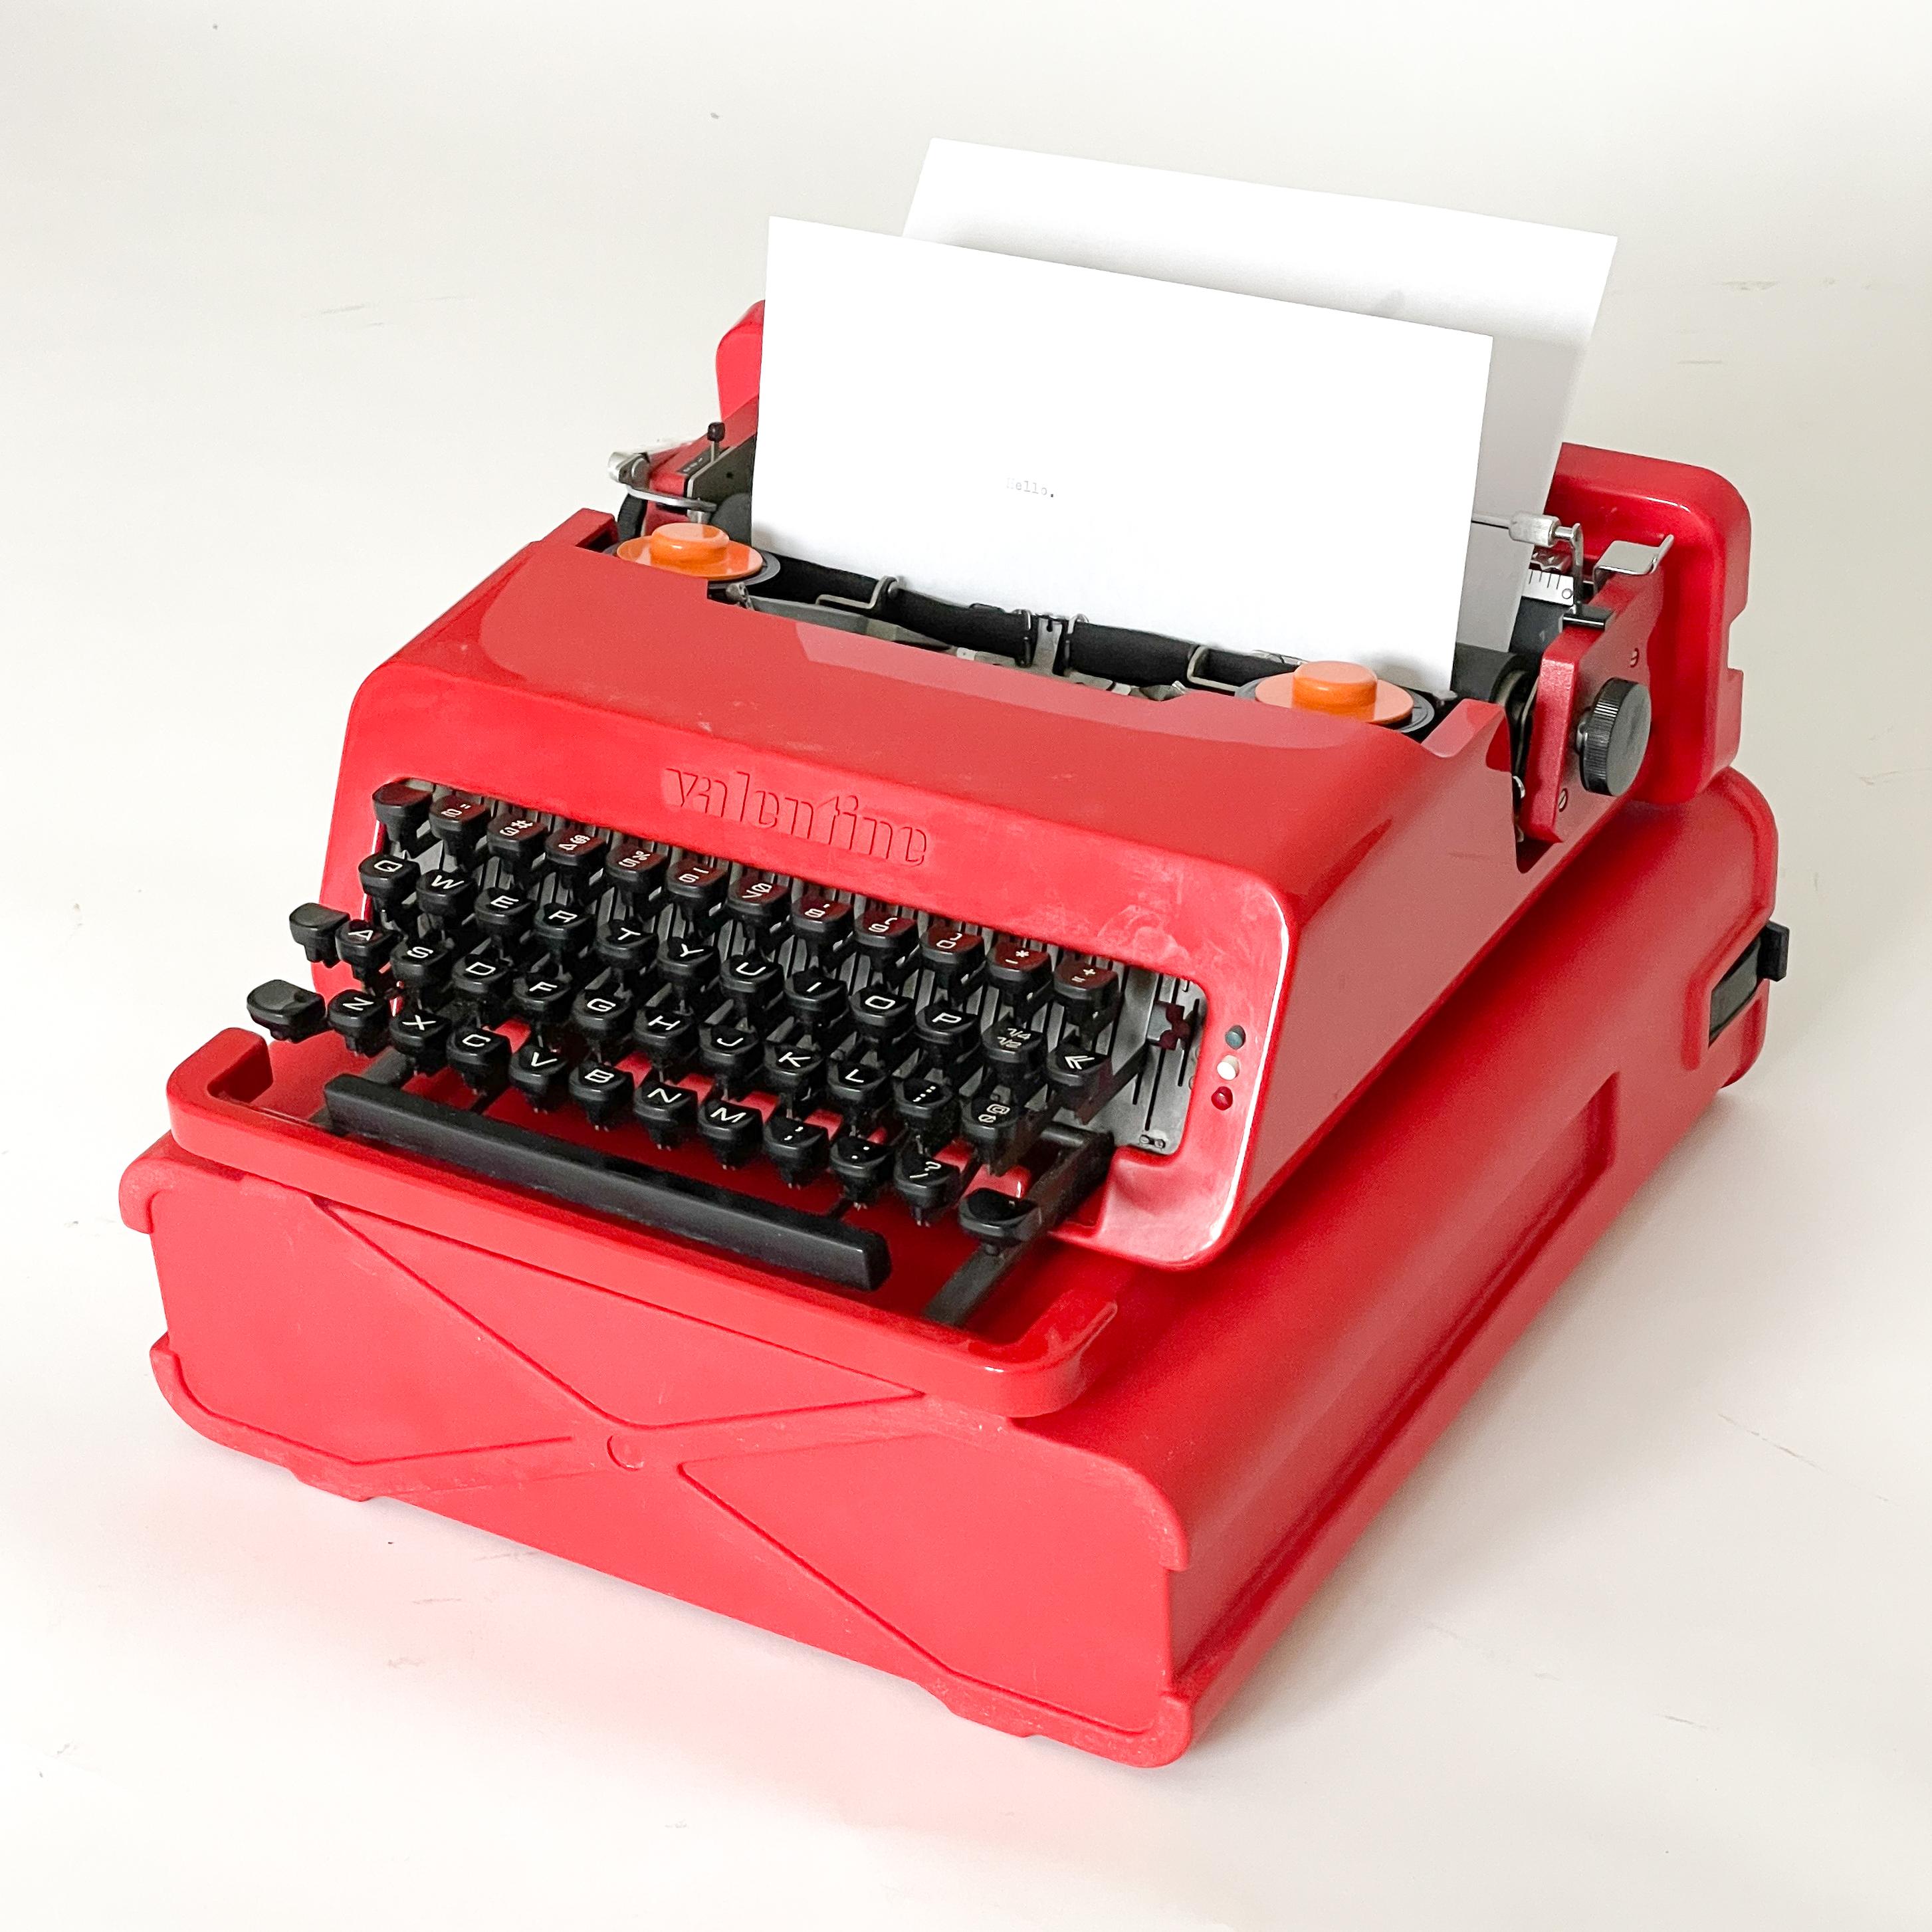 Conçue par Ettore Sottsass et Peter King, la machine à écrire est conservée dans la collection permanente du MoMa, où elle constitue un excellent exemple de pop art.
La machine à écrire présage également de la propre évolution de Sottsass avant